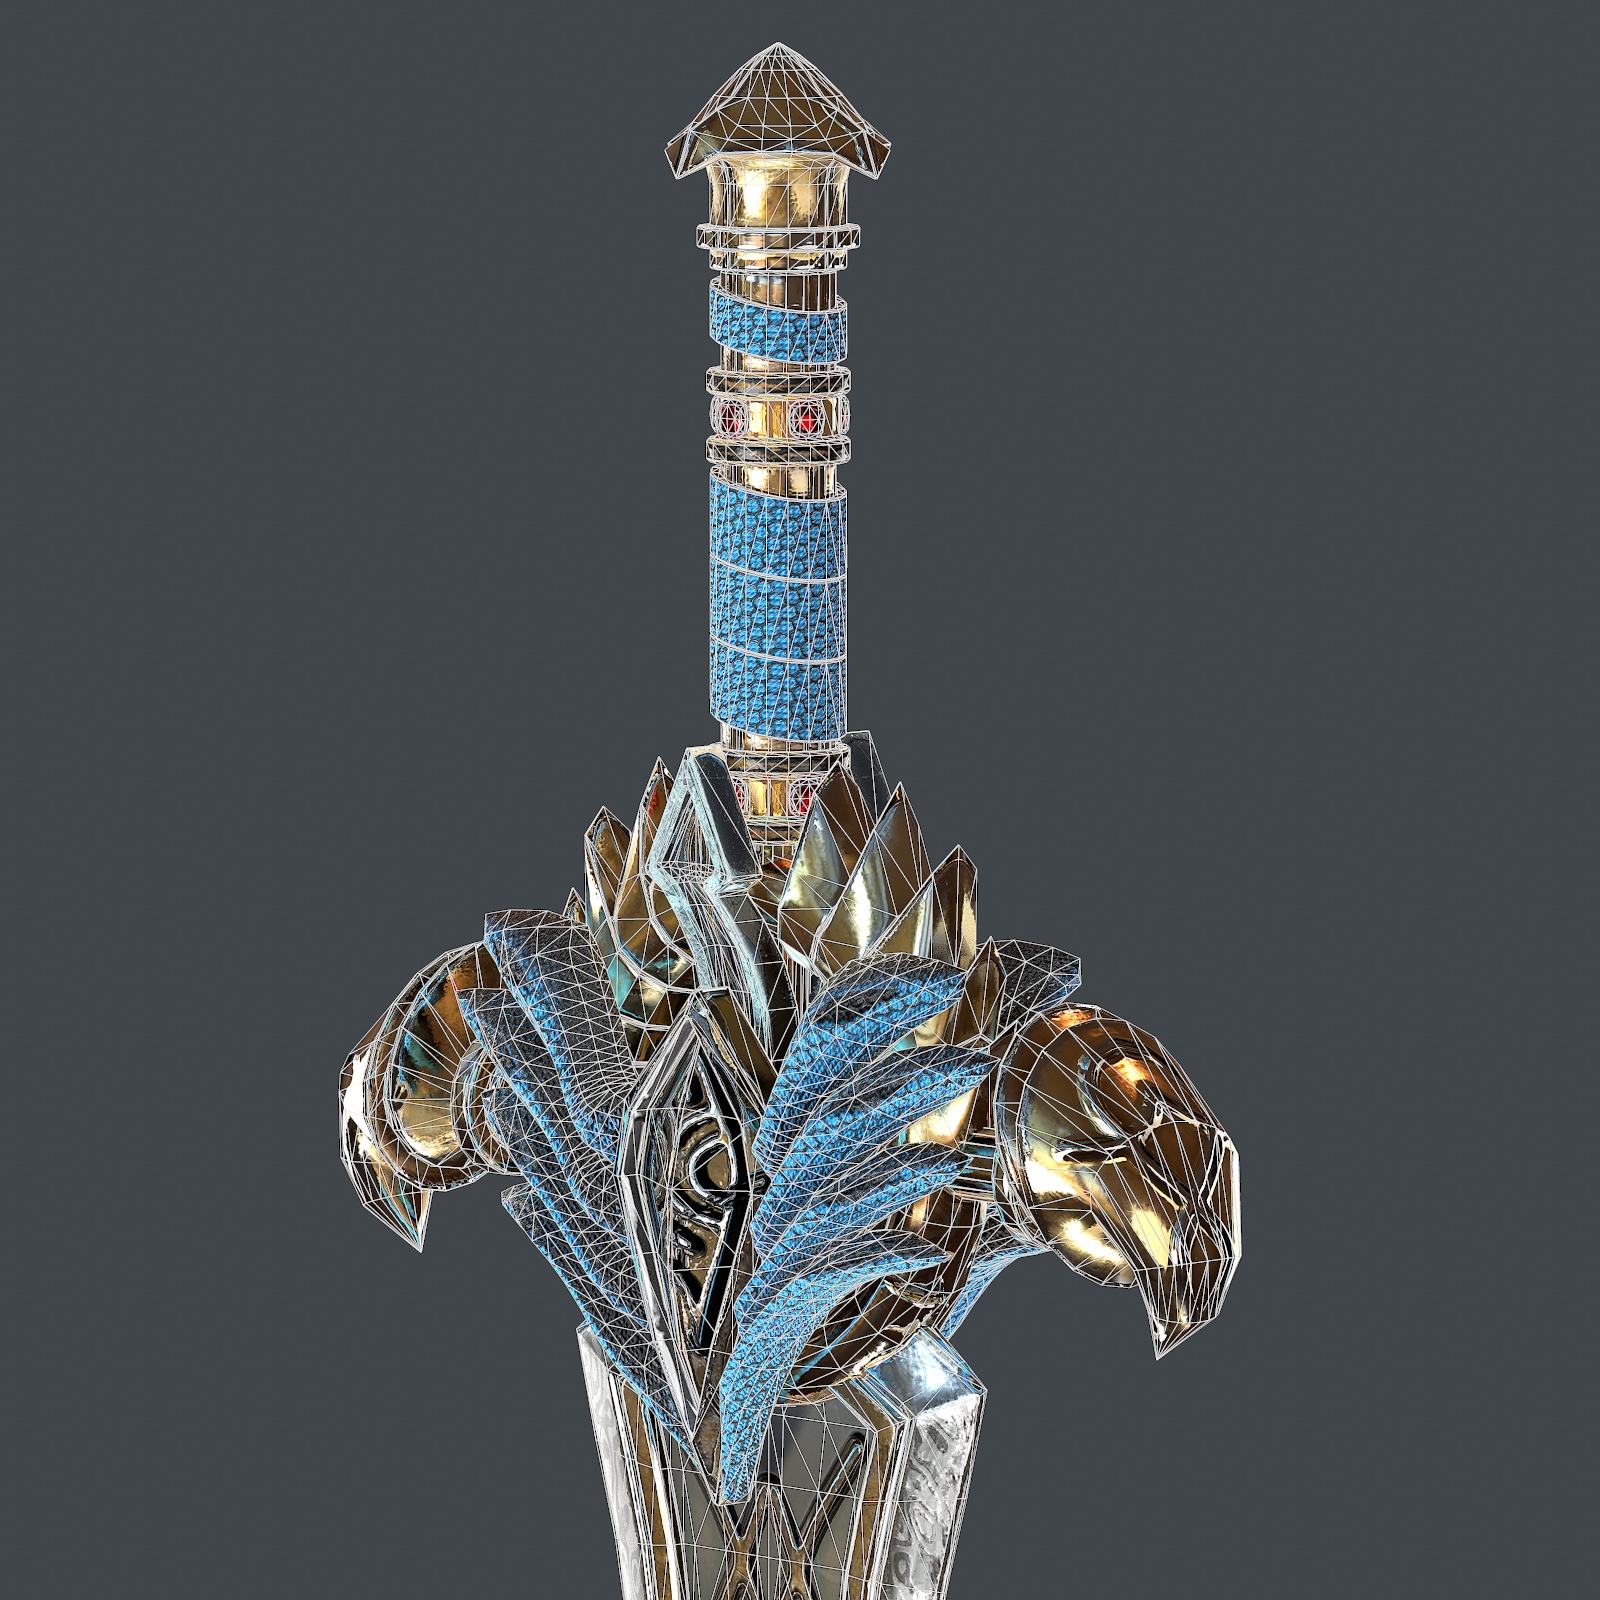 Espada de fantasía 25 con vaina modelo 3d 3D modelo Compro - render